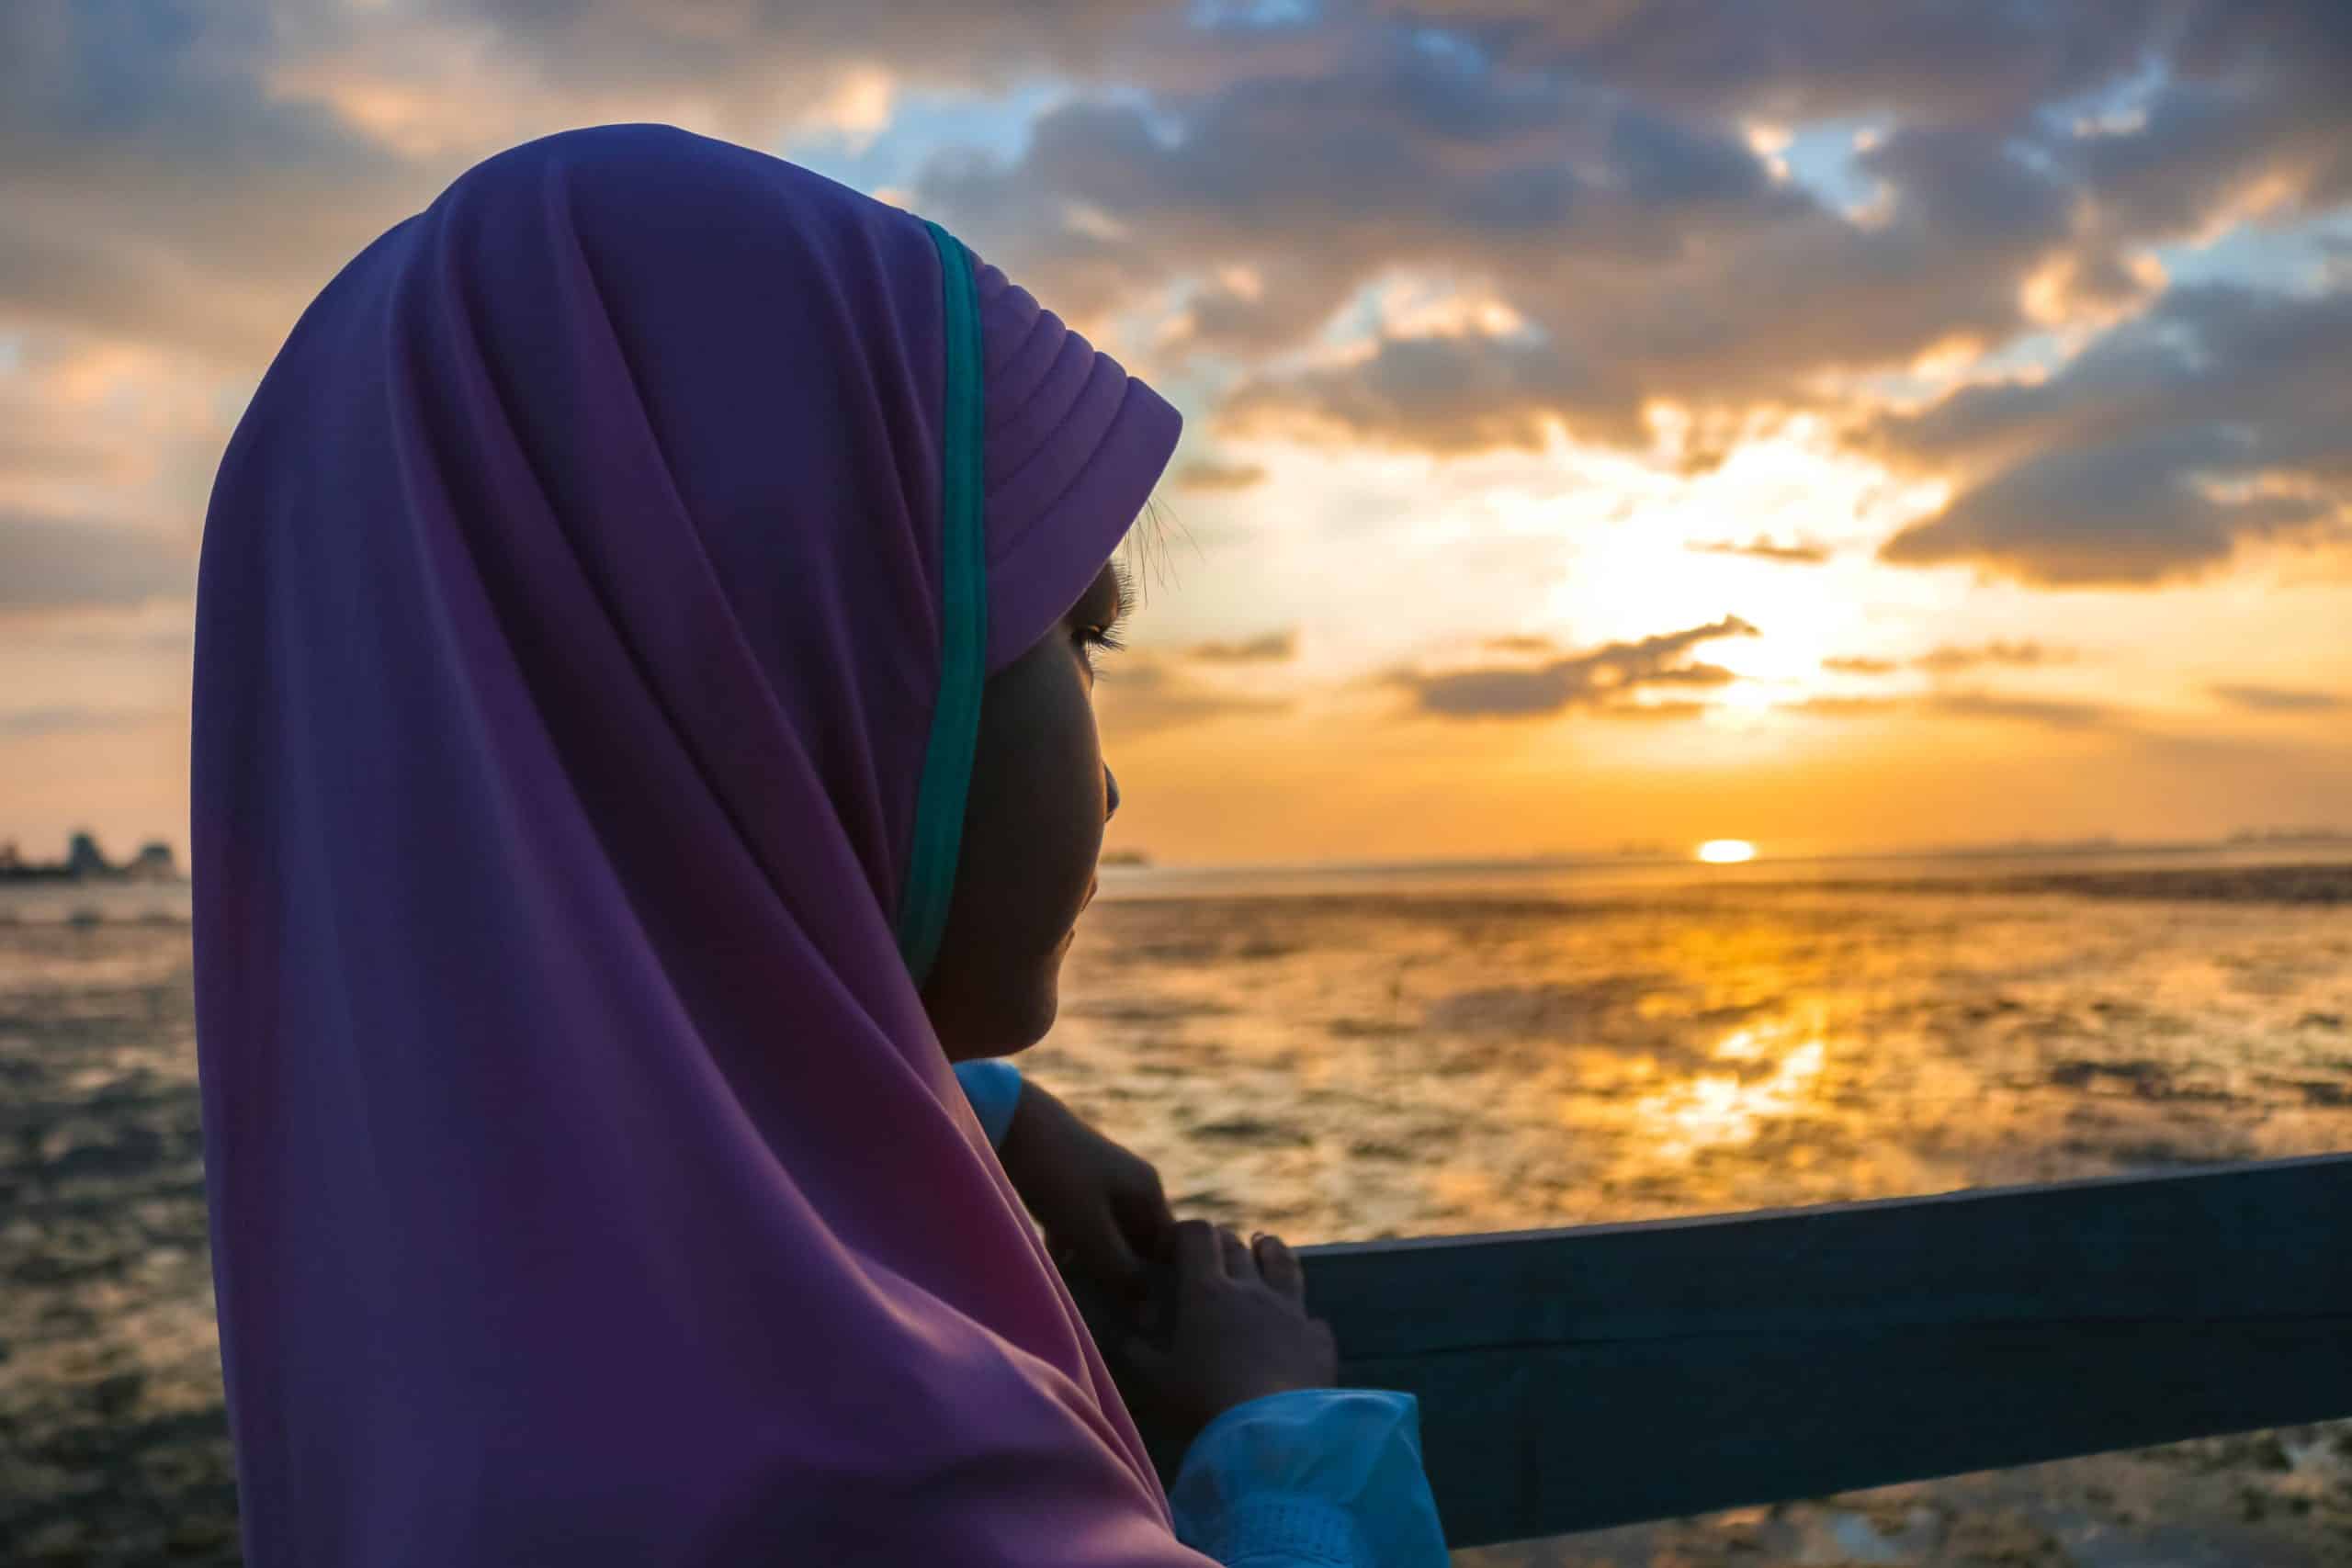 Girl wearing a hijab looking towards the setting sun